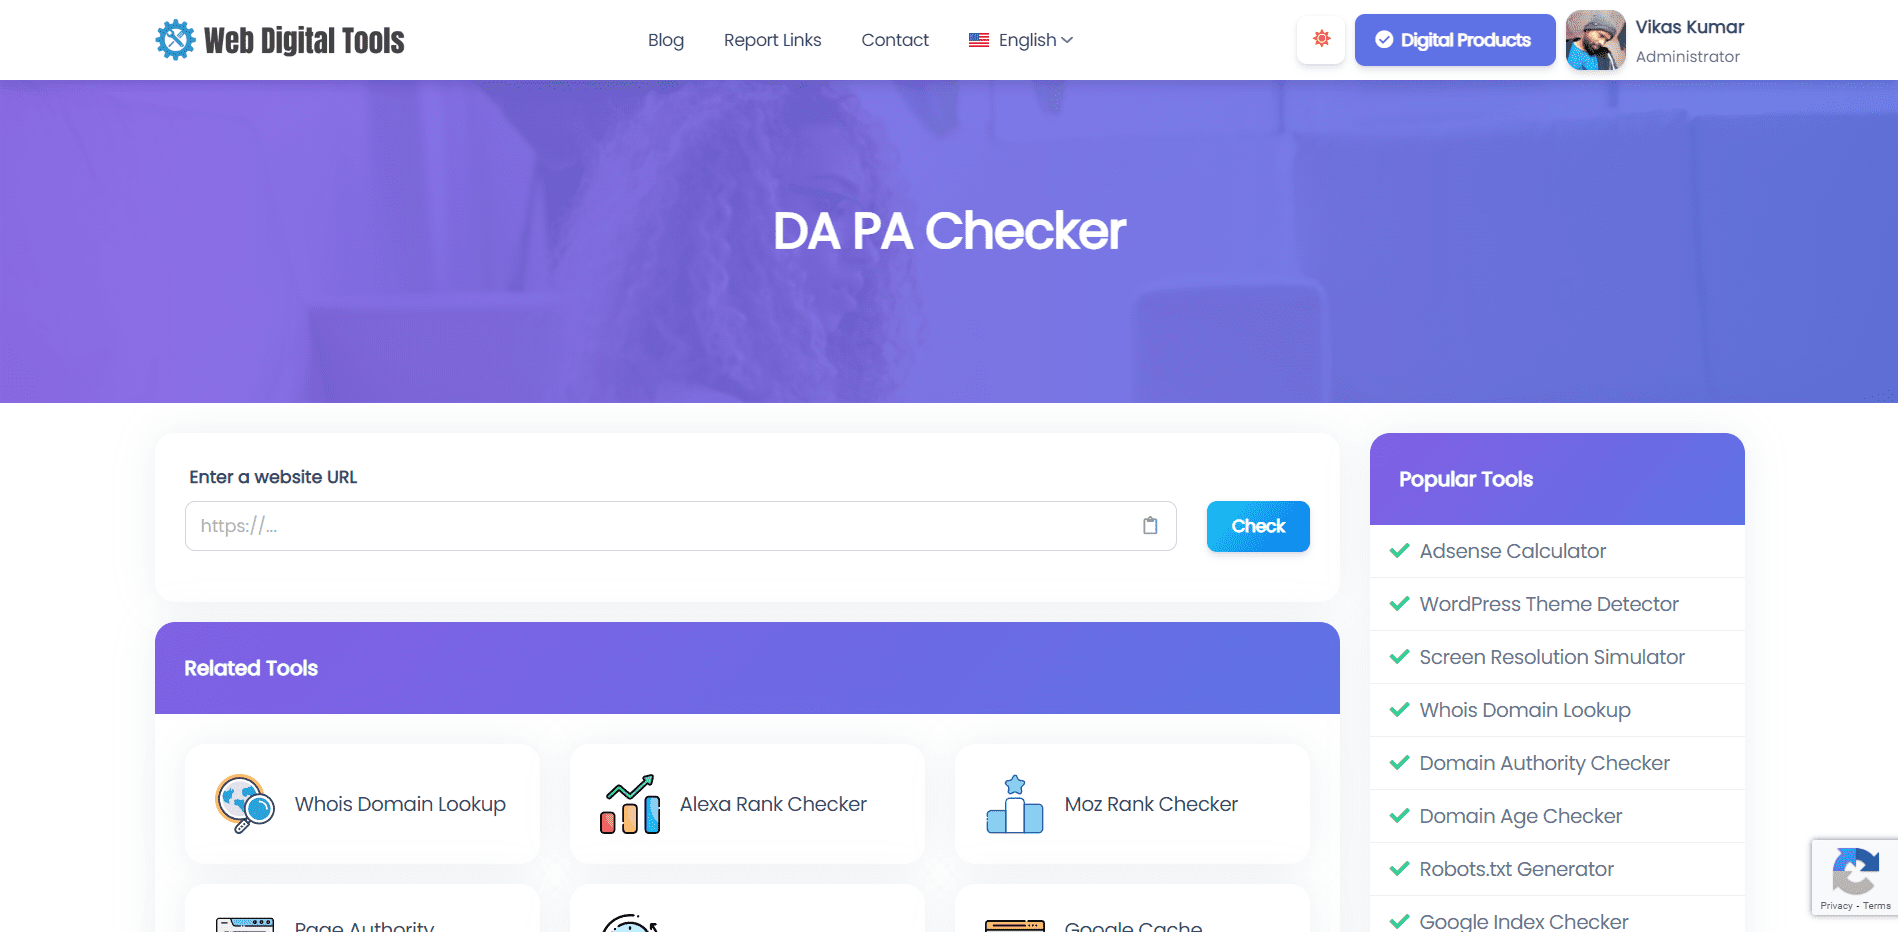 DA PA Checker